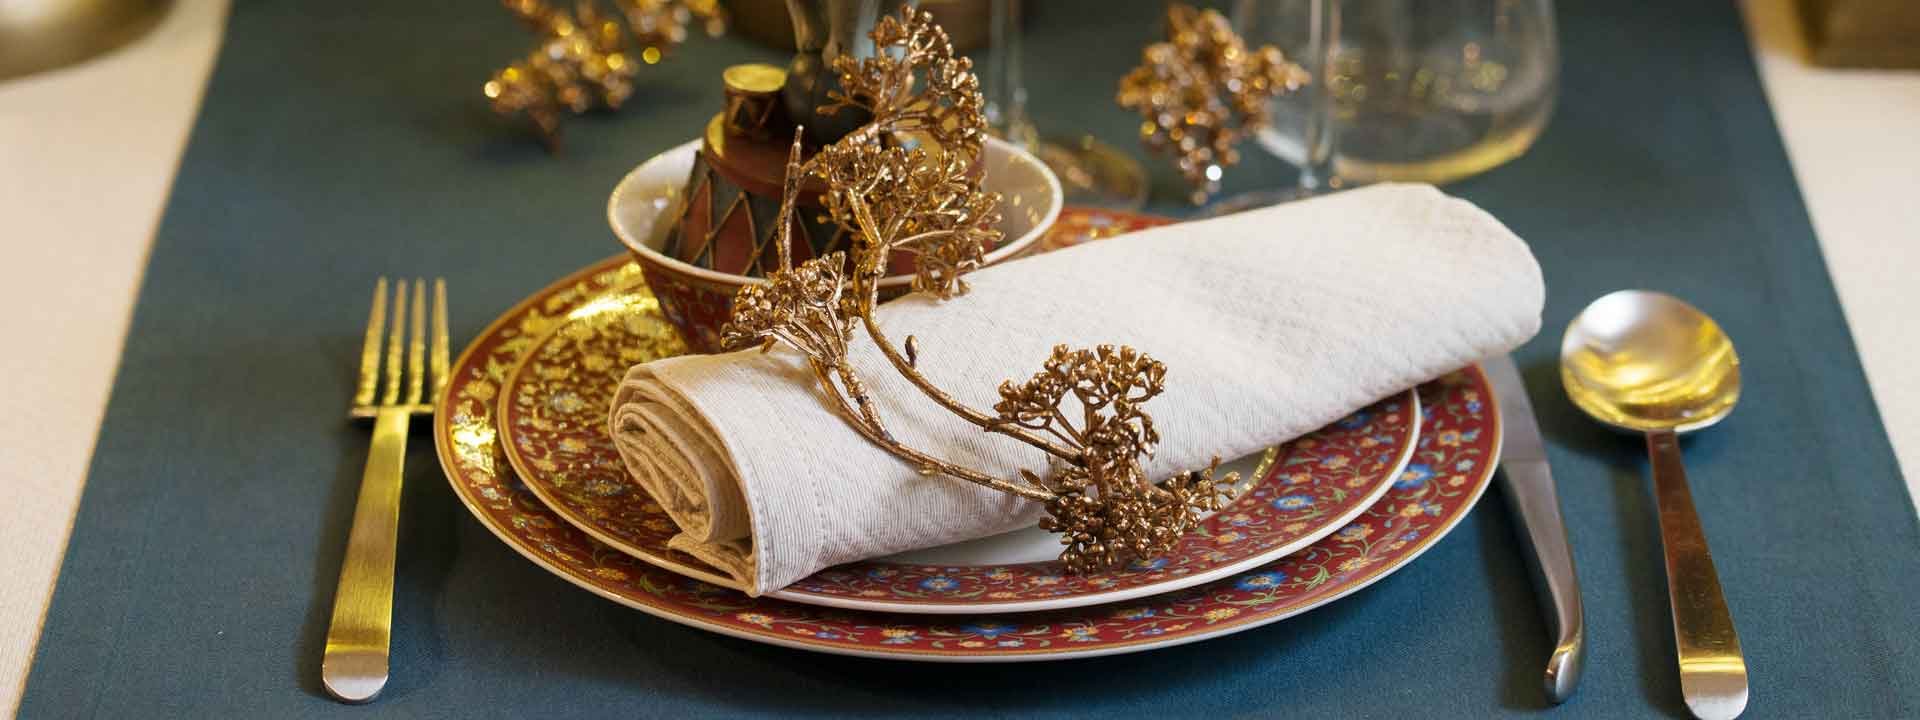 Table de Noël : Les indispensables d’une décoration raffinée et exclusive